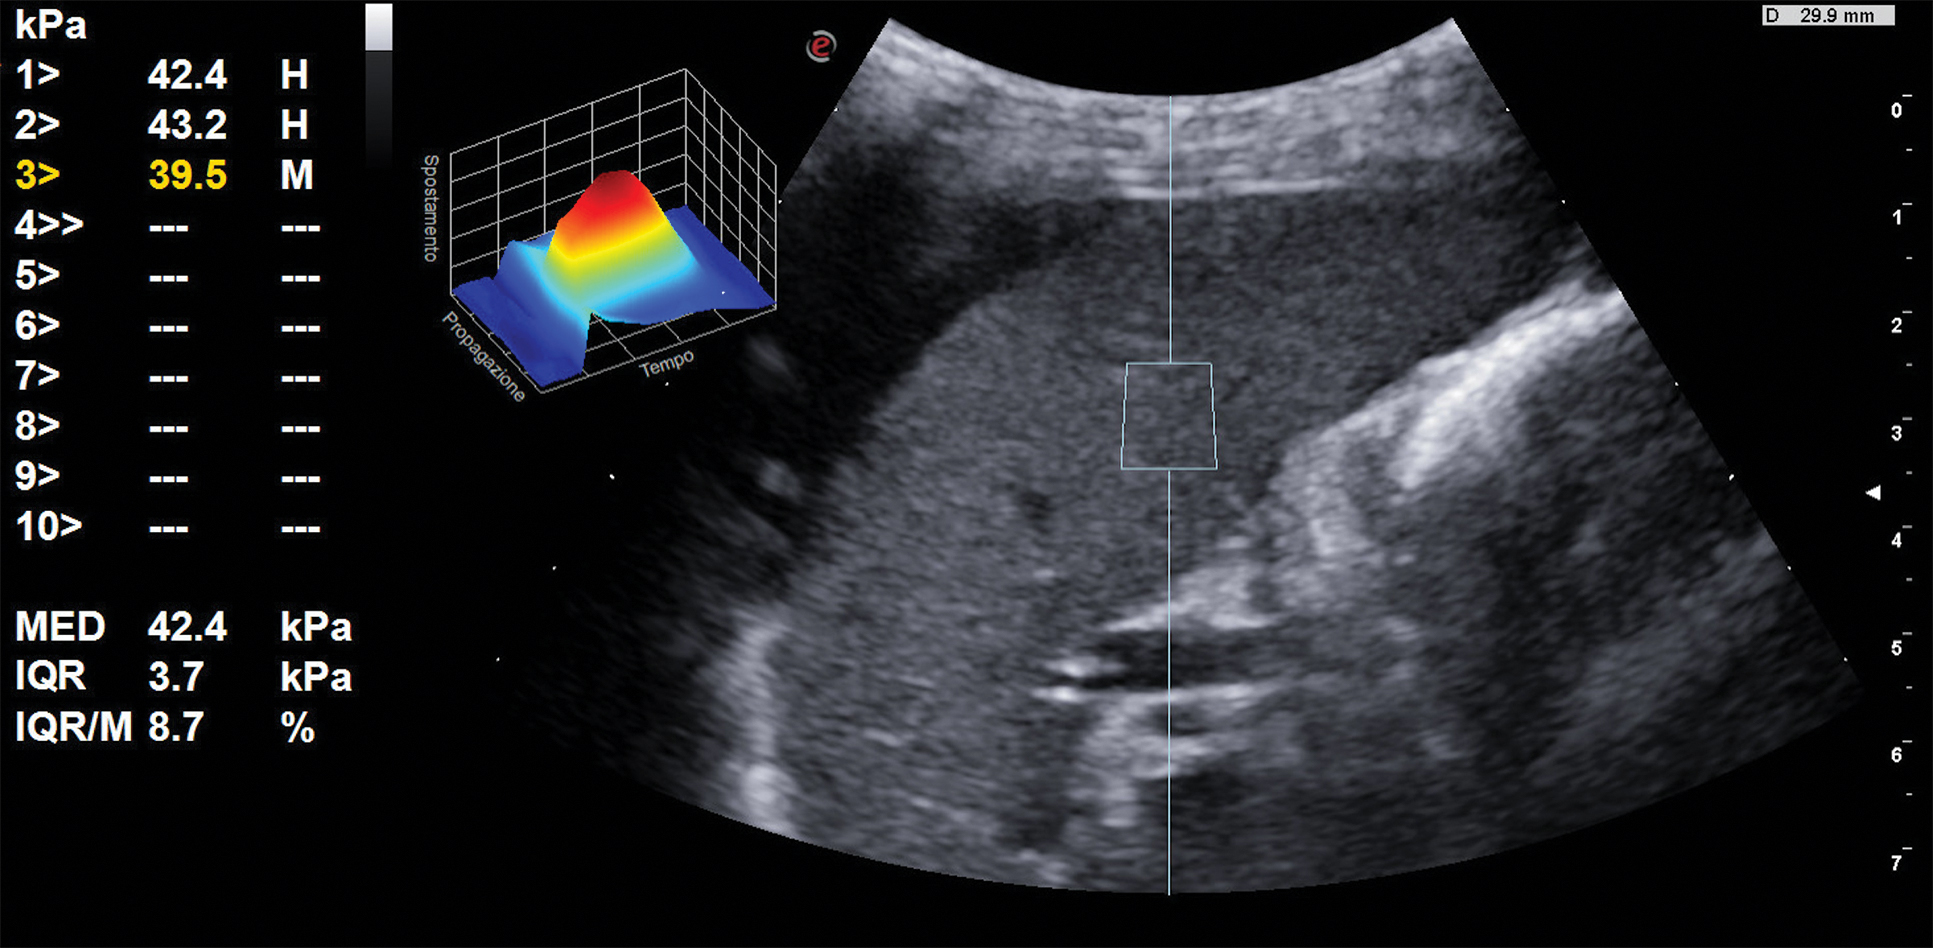 paraumbilical vein ultrasound